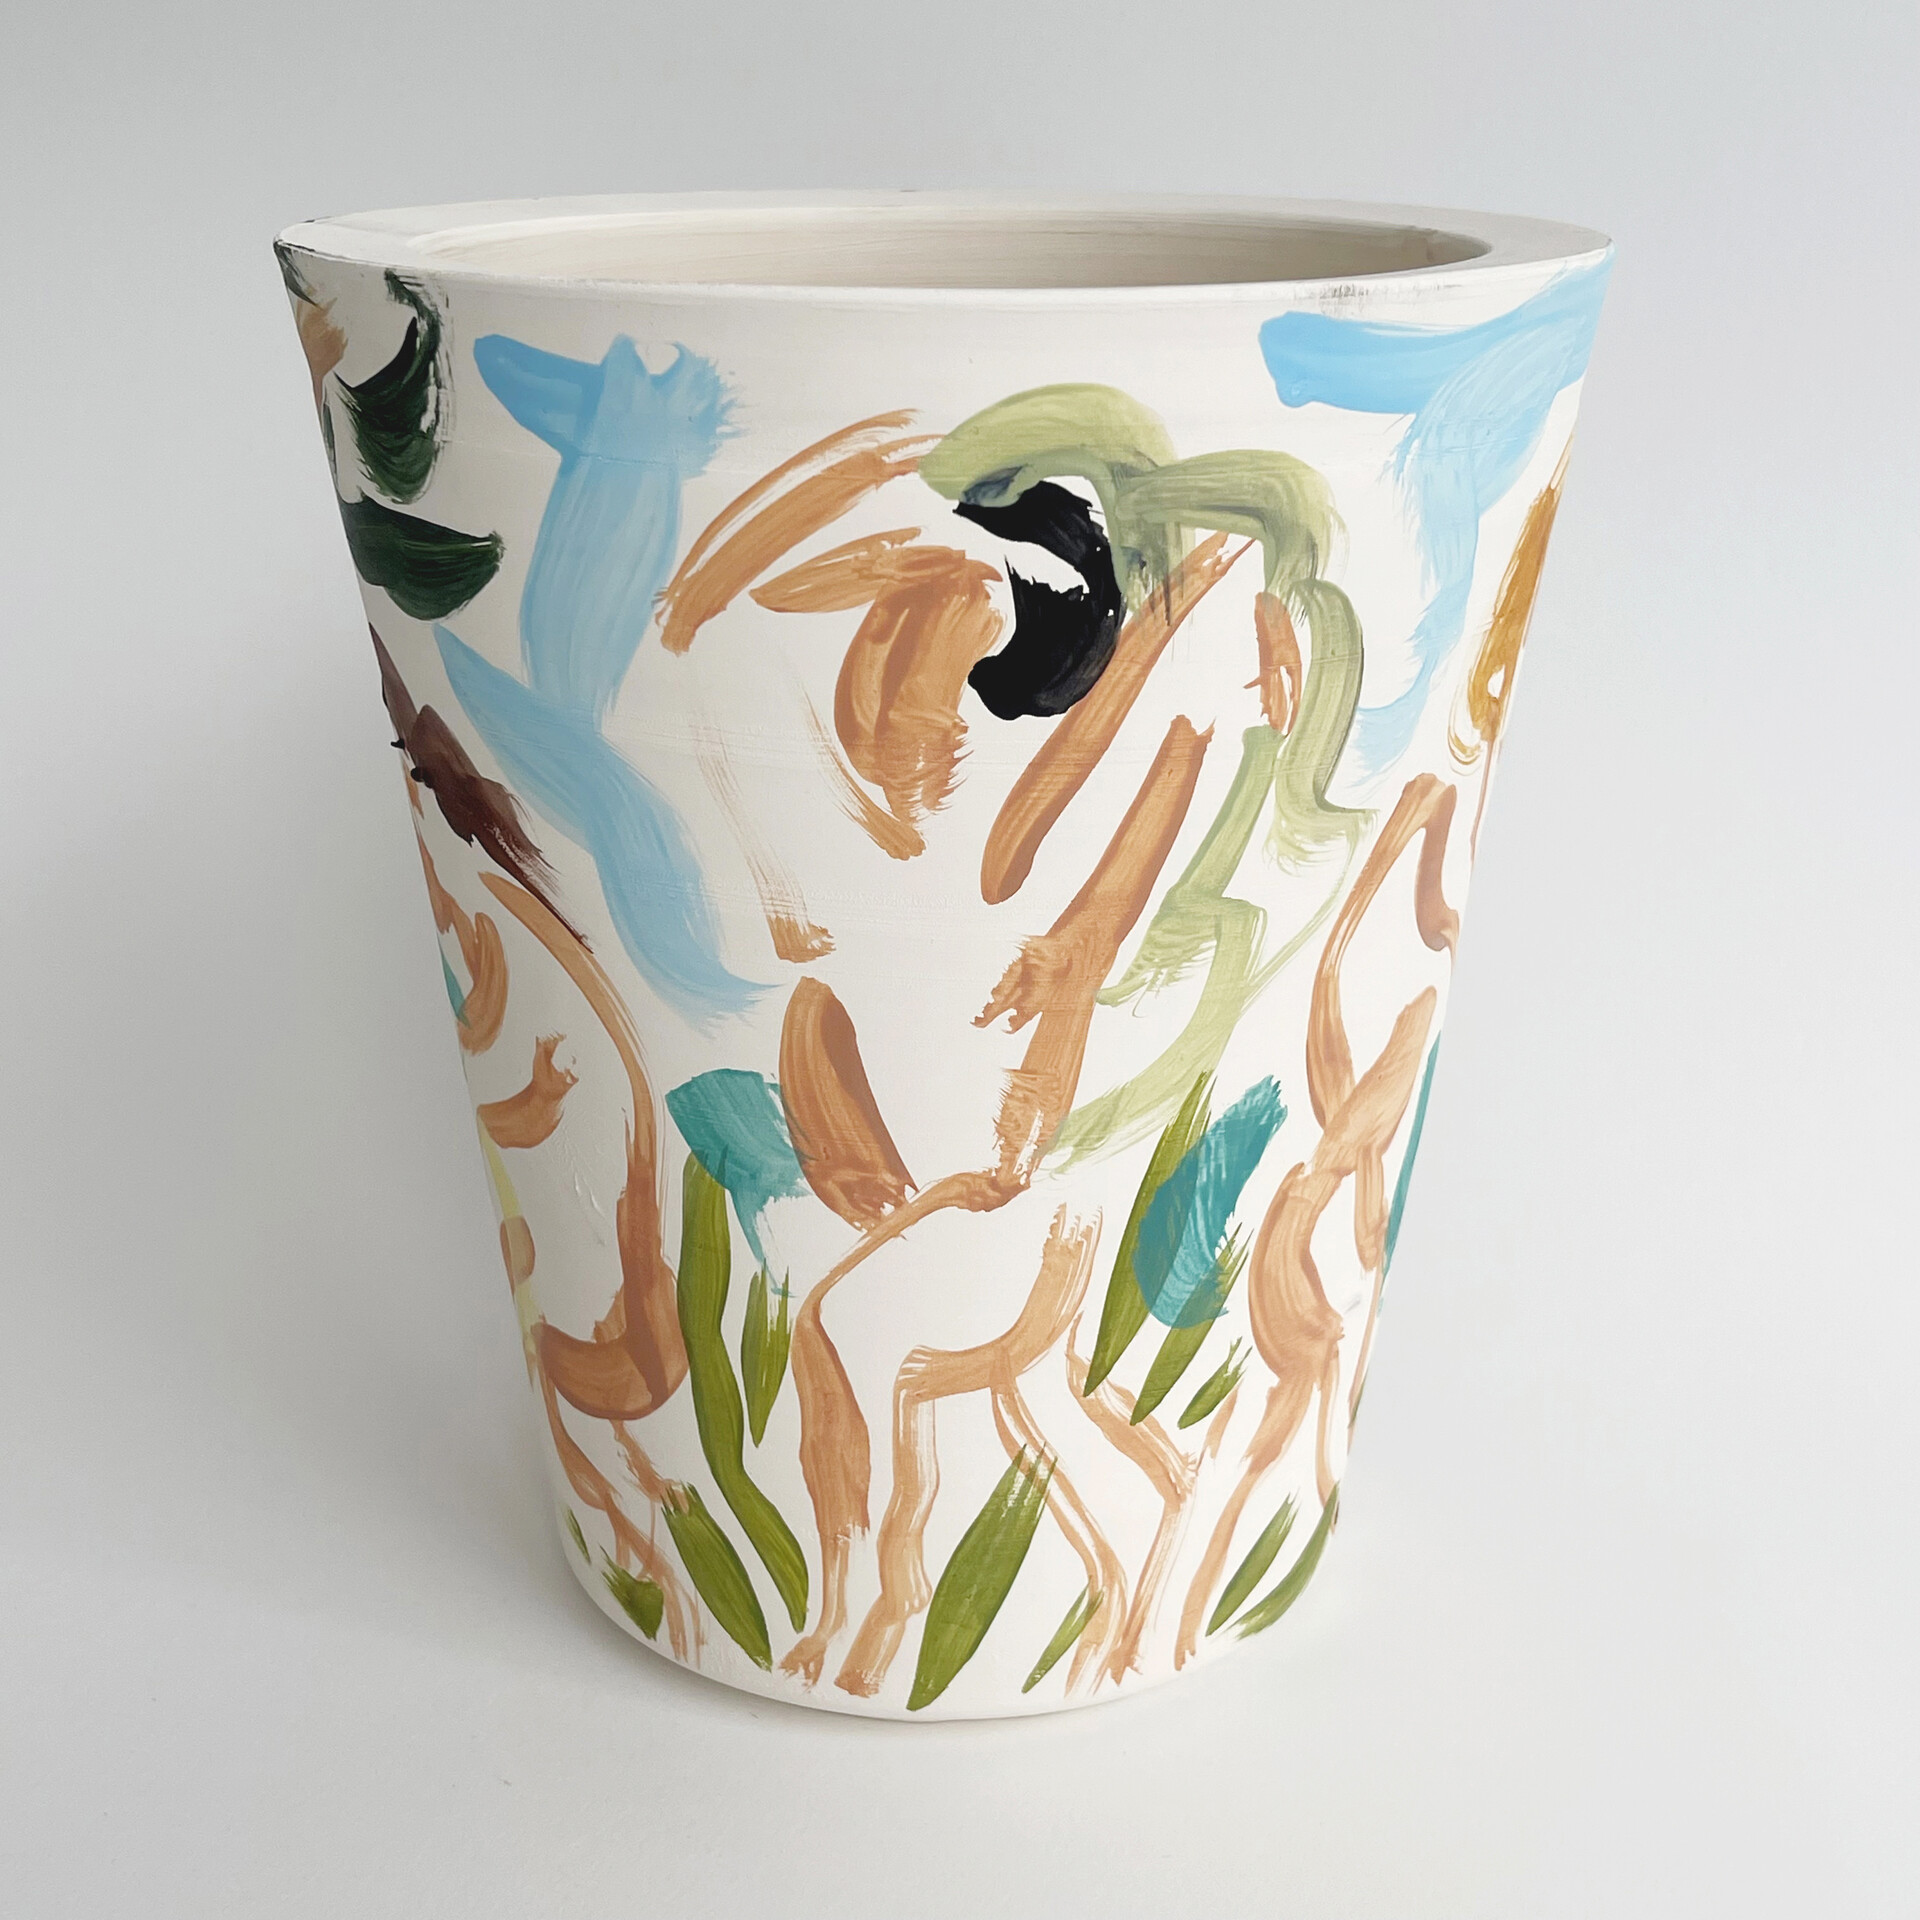 „Plage de Porquerolles”, 2021, oil paint on ceramics, 19,5 x 18, 5 cm